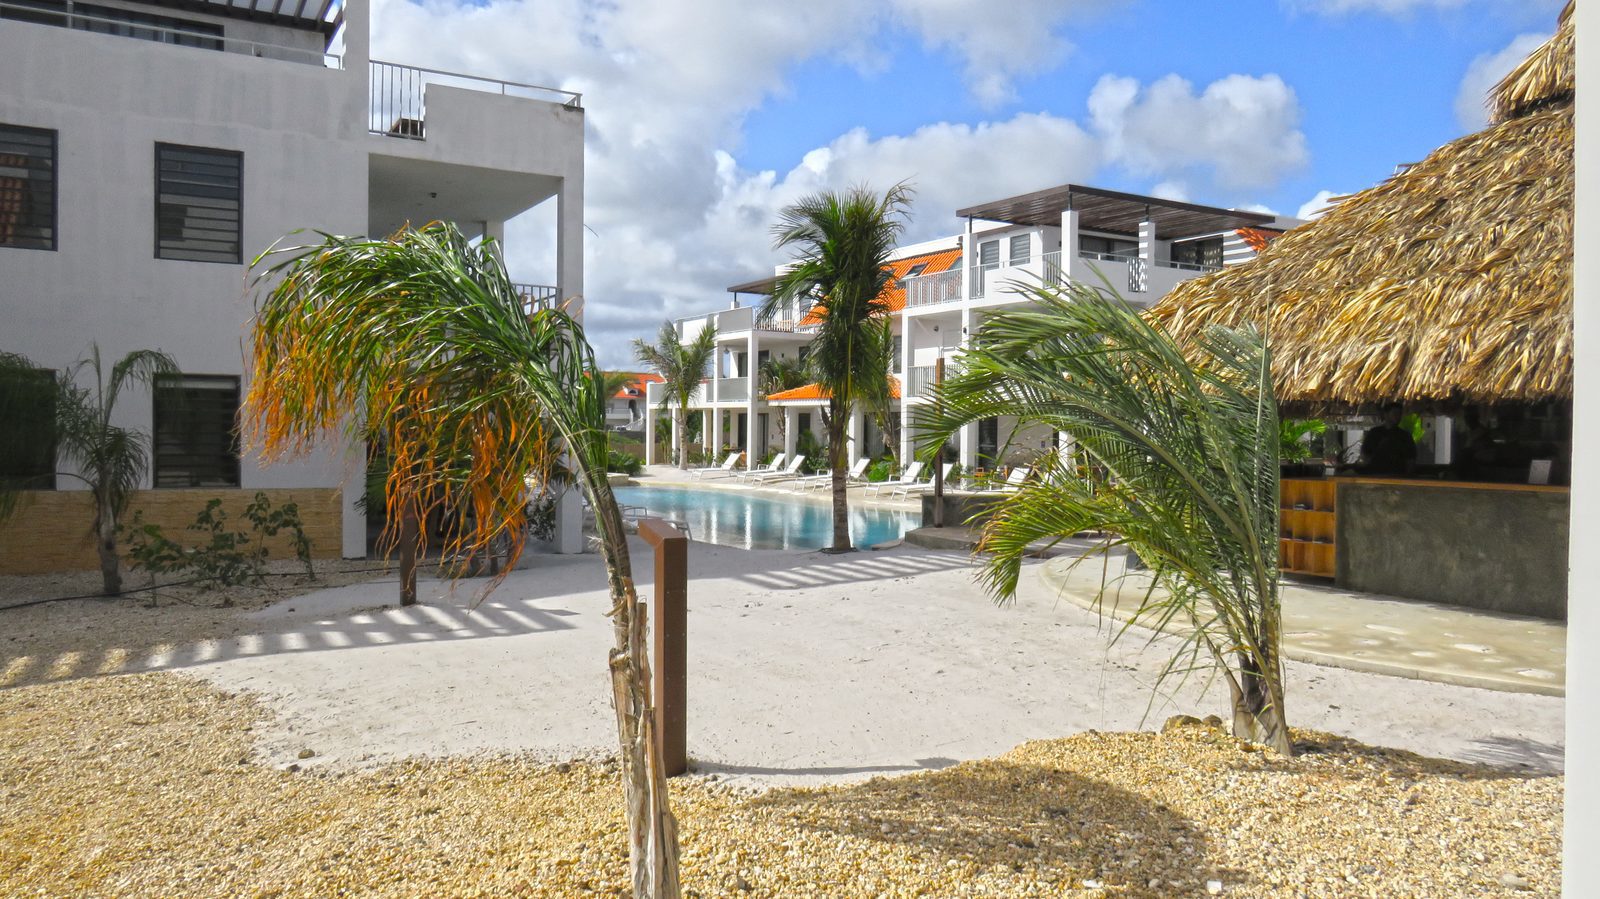 Suchen Sie Unterkünfte auf Bonaire? Schauen Sie sich die verfügbaren Unterkünfte unseres Resorts an. Kinderfreundliche, luxuriöse Appartements, die mit allem Komfort ausgestattet sind, den Sie sich wünschen könnten!